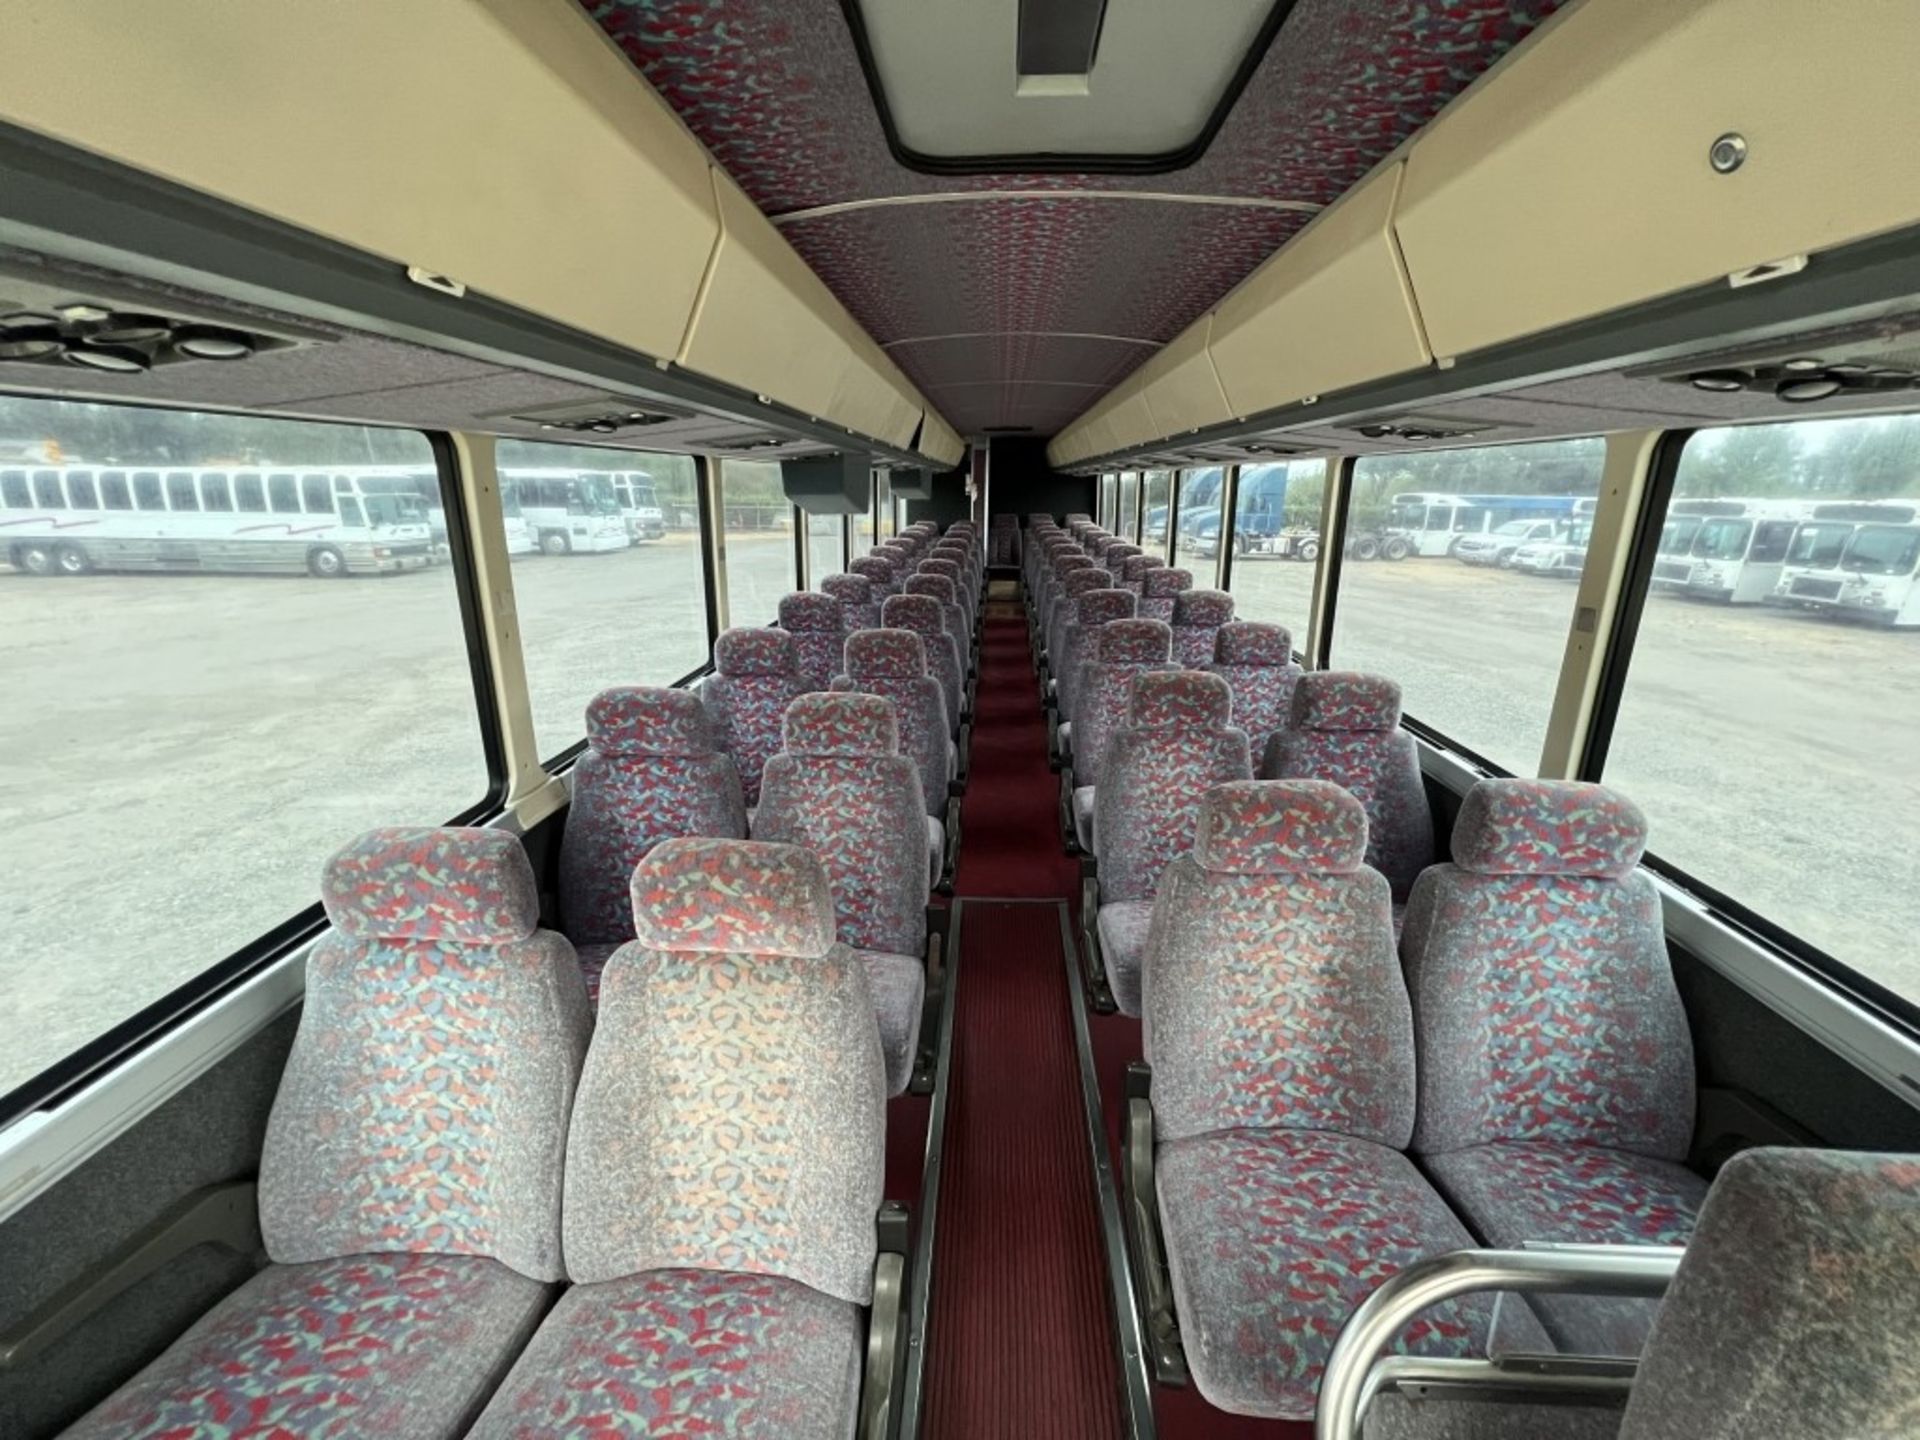 1989 MCI 102-C3 T/A Coach Bus - Image 14 of 22